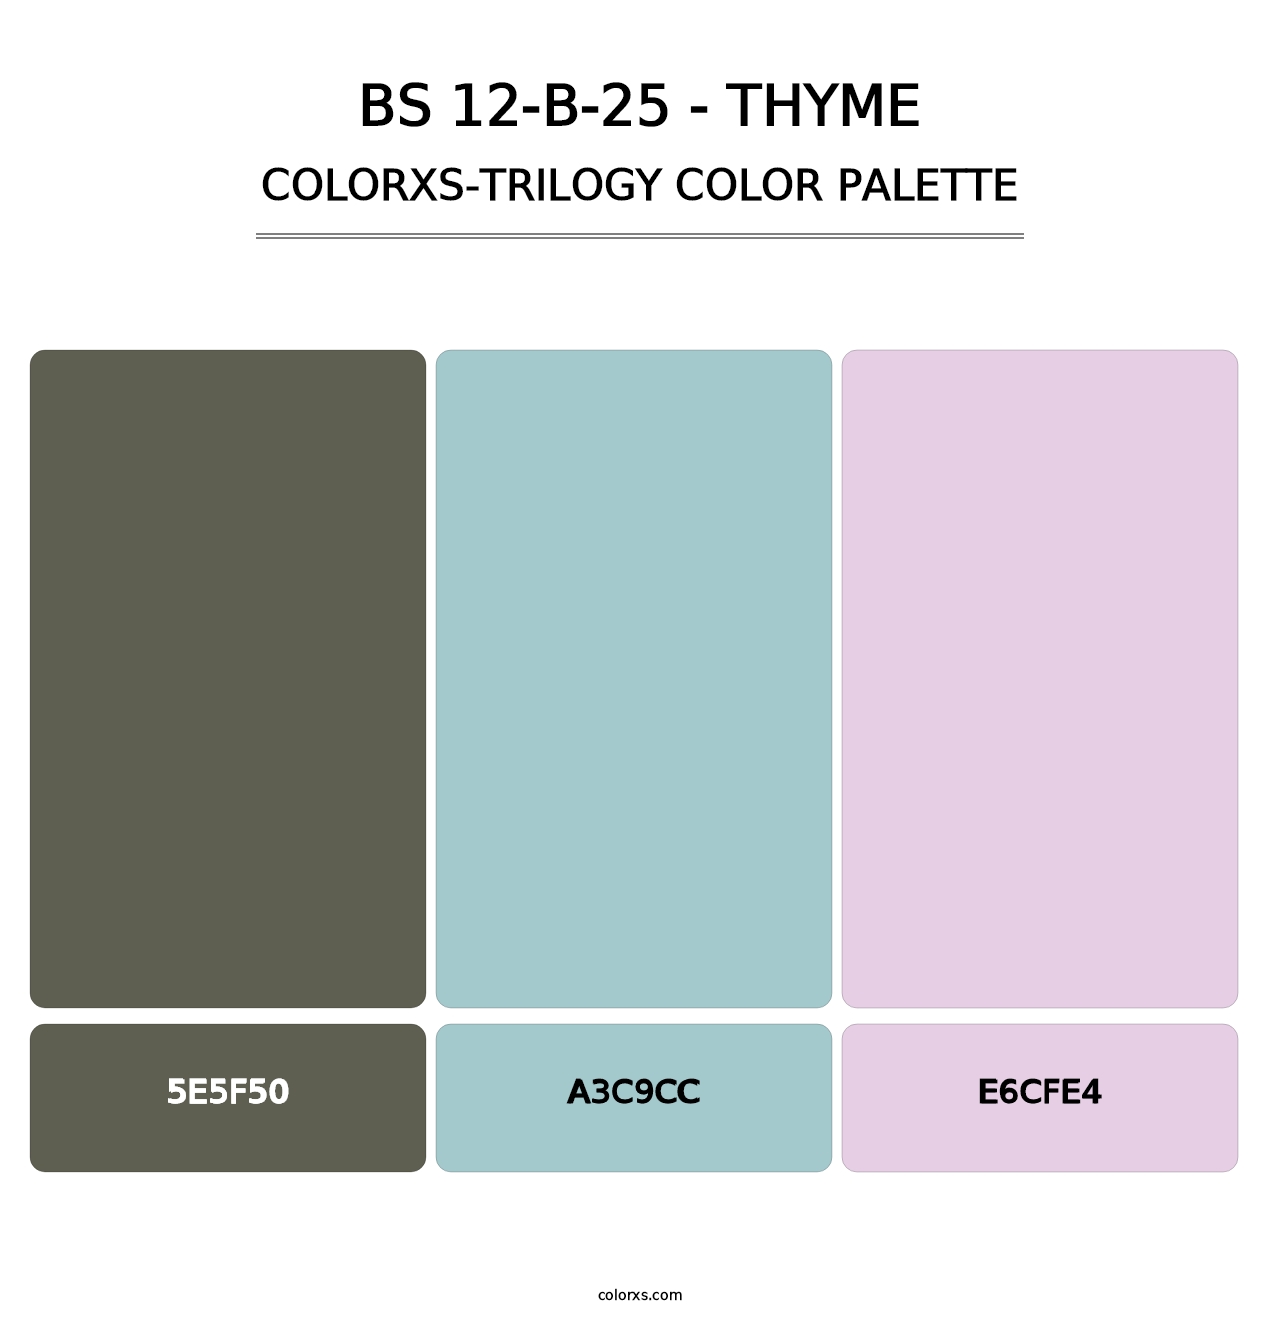 BS 12-B-25 - Thyme - Colorxs Trilogy Palette